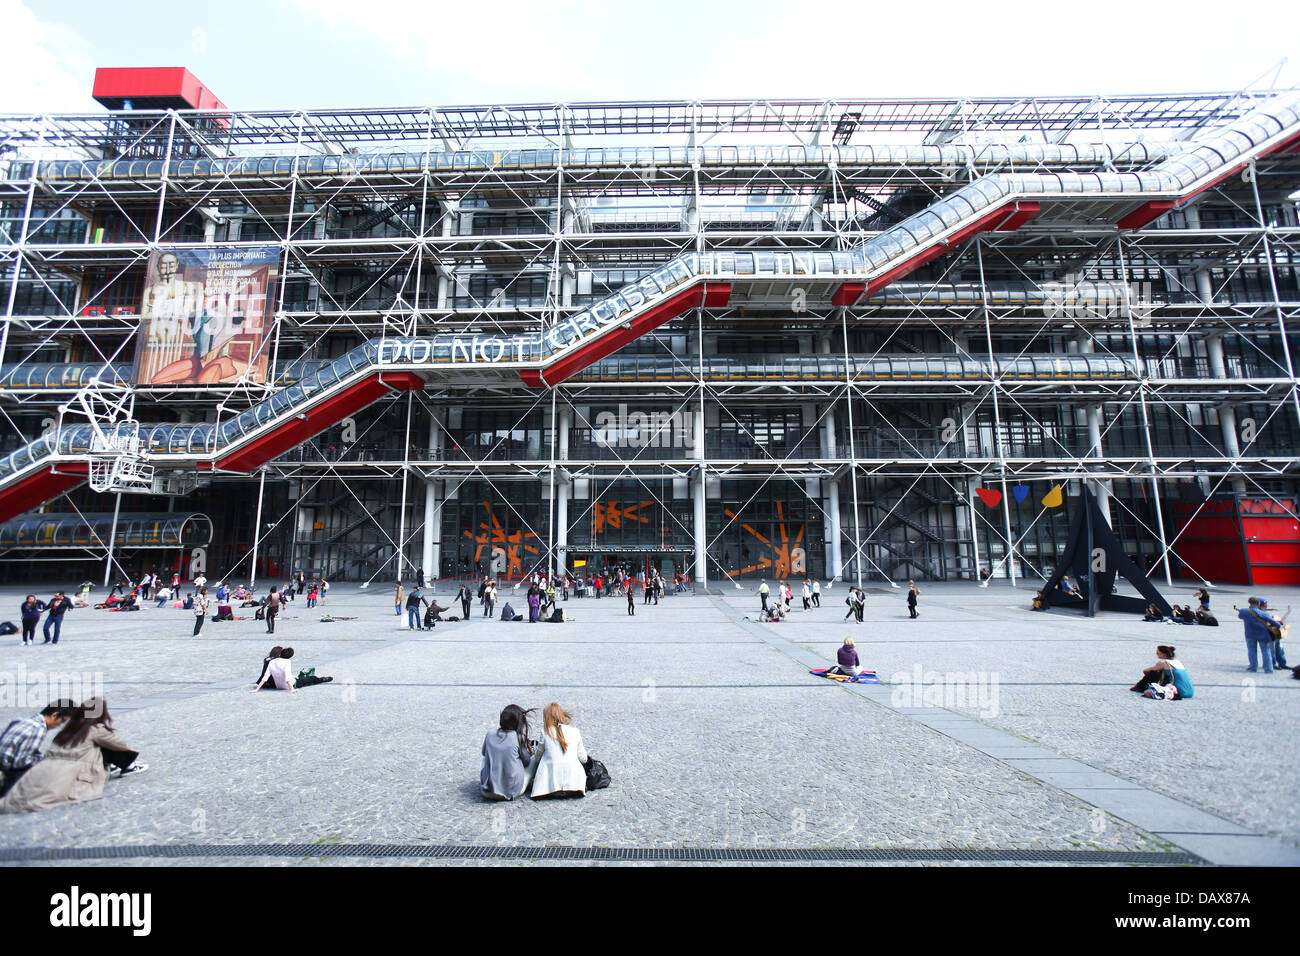 Centre Pompidou à Paris qui abrite le Musée National d'Art Moderne, la plus grande galerie d'art moderne en Europe. Banque D'Images